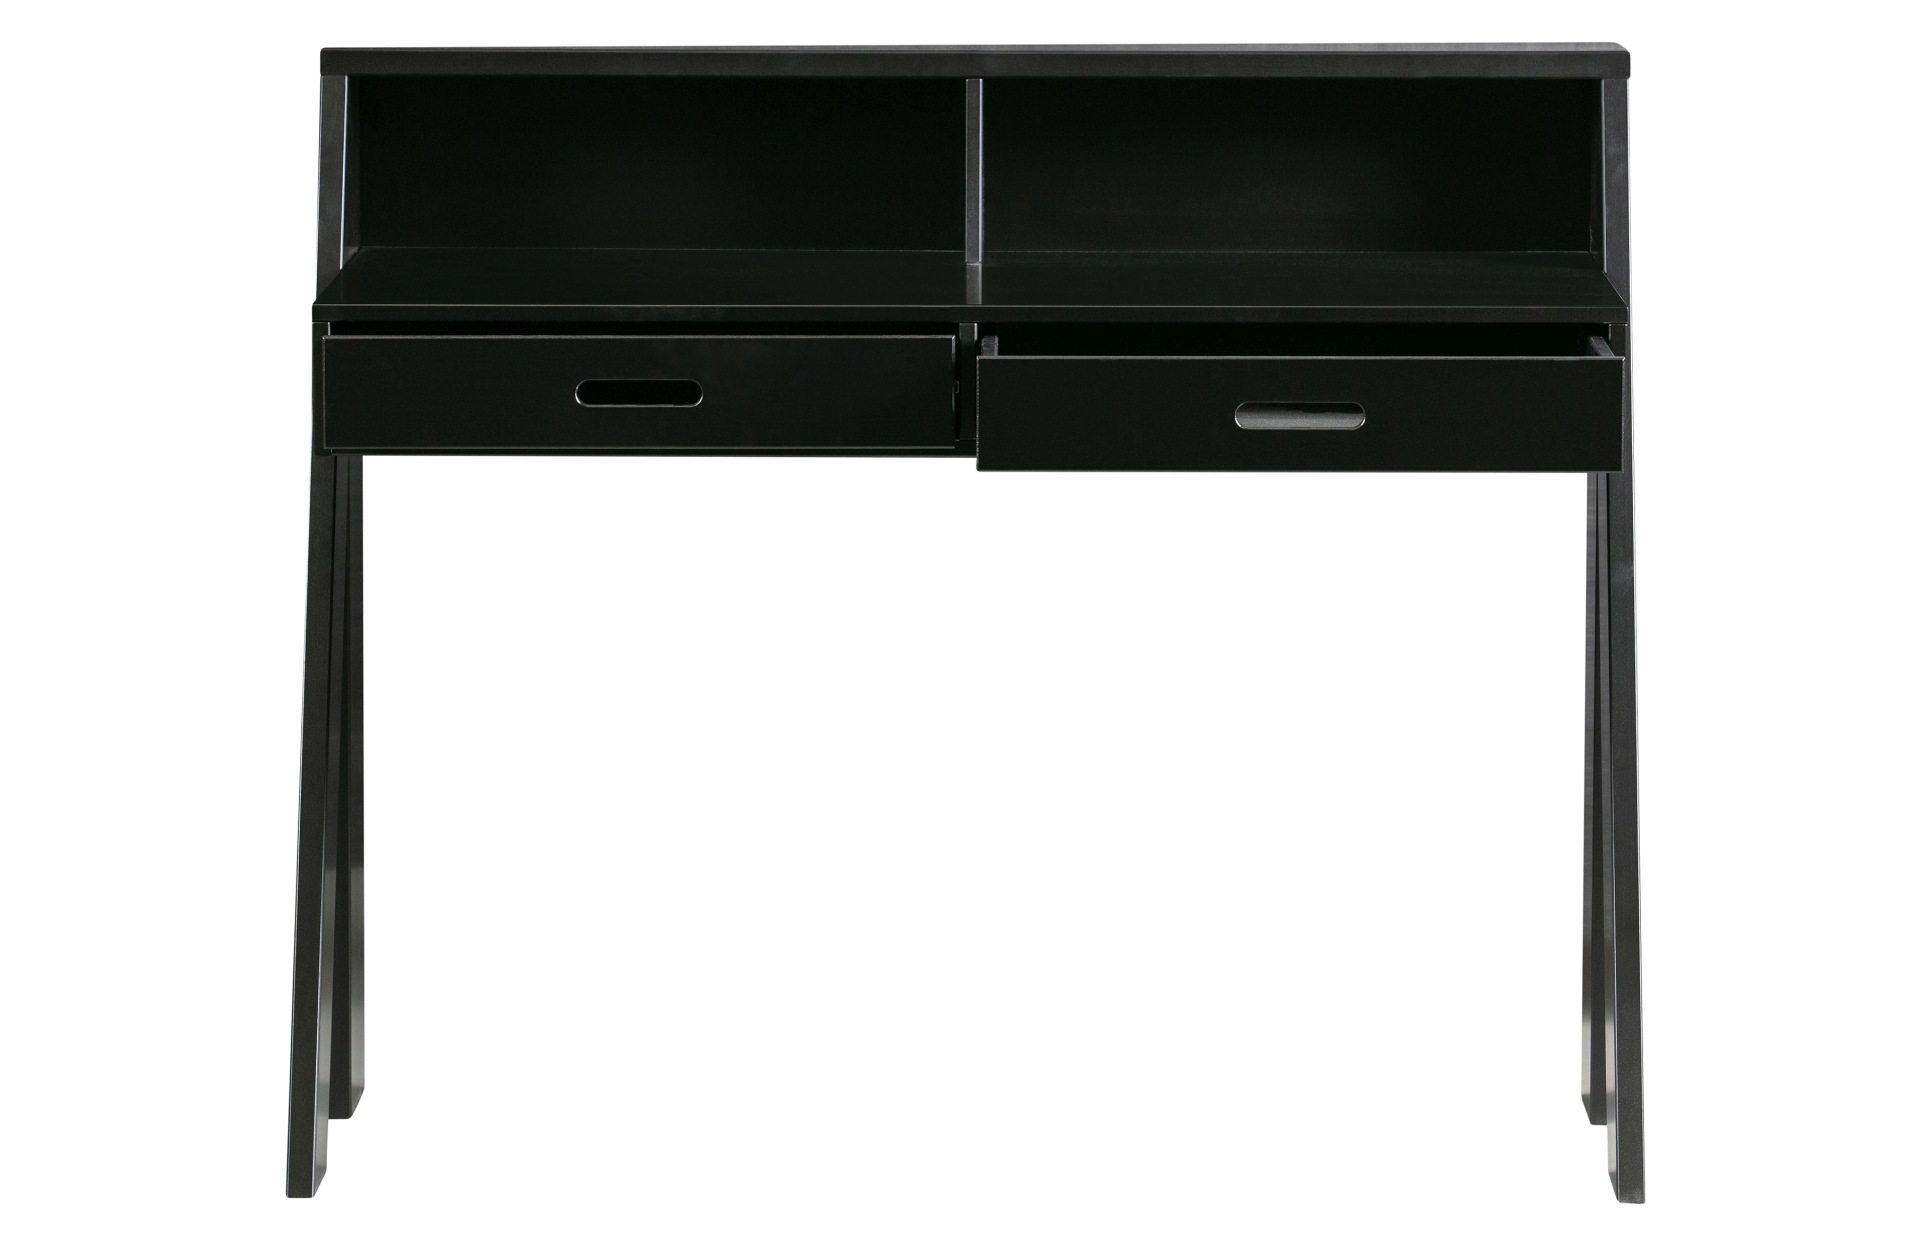 Der Schreibtisch Connect wurde aus Kiefernholz gefertigt. Er überzeugt mit seinem schlichten aber modernen Design. Der Schreibtisch verfügt über zwei Schubladen für diverse Utensilien und ist in einem schwarzen Farbton.